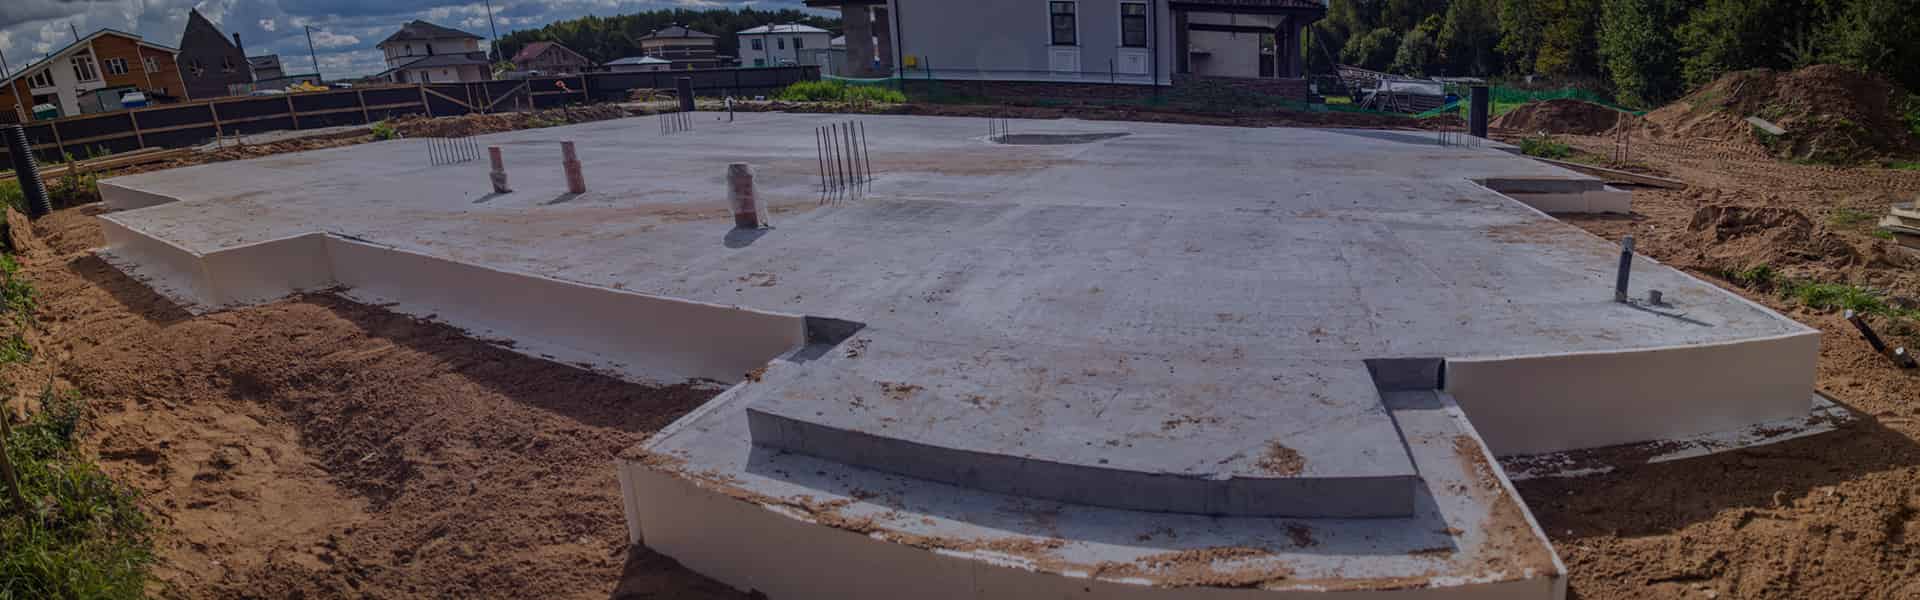 Несущие конструкции и бетонные поверхности А класса